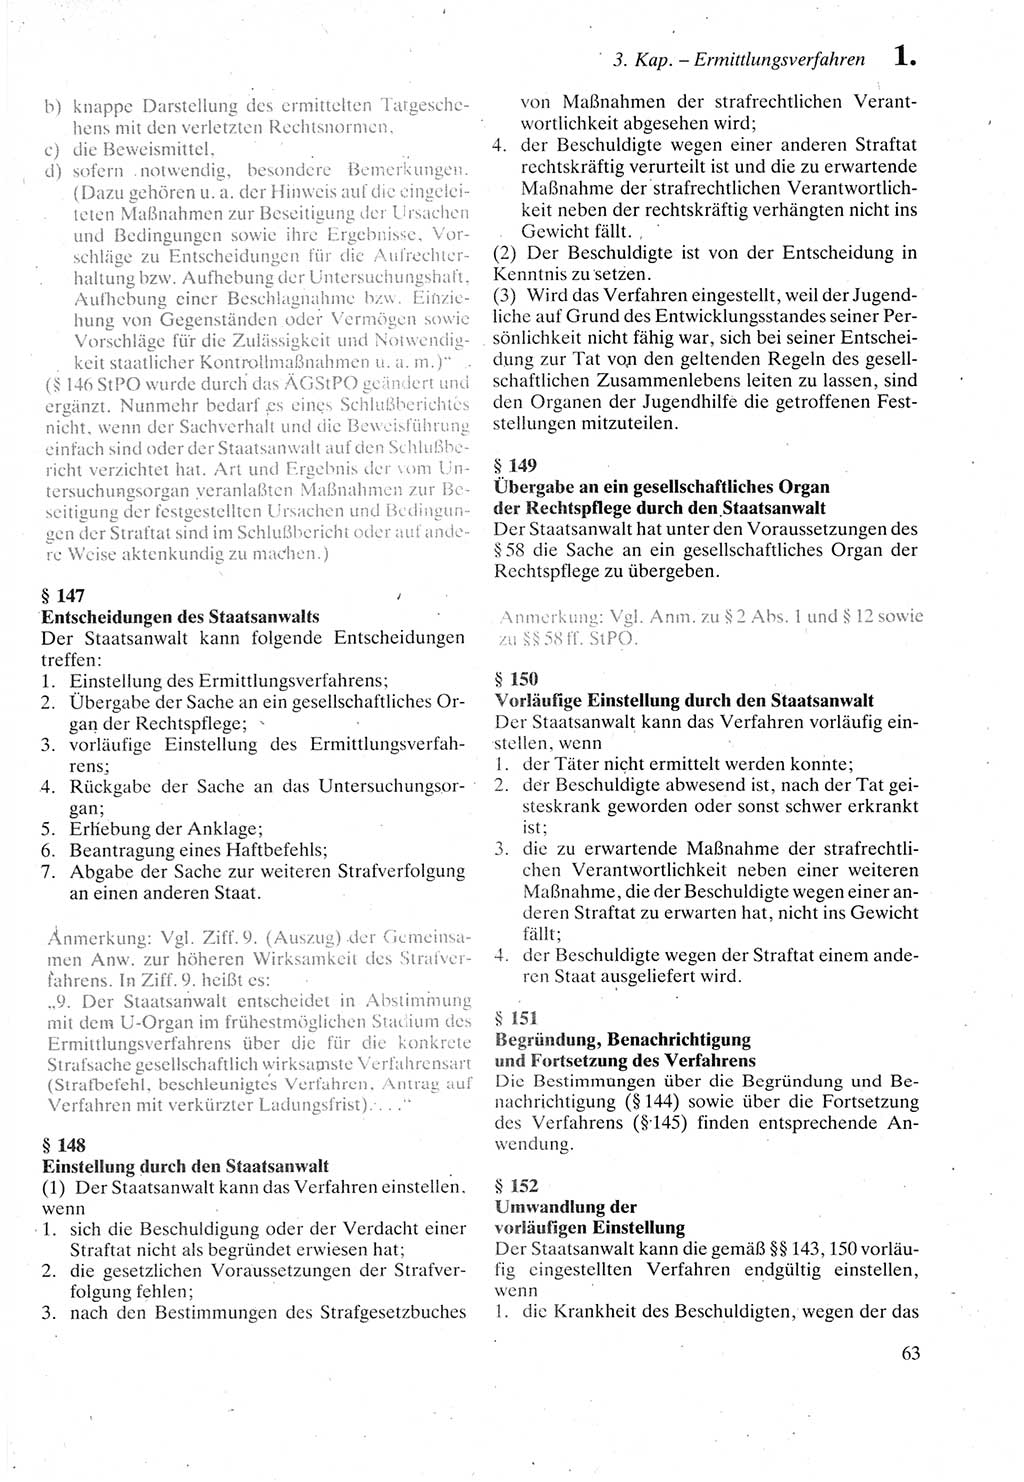 Strafprozeßordnung (StPO) der Deutschen Demokratischen Republik (DDR) sowie angrenzende Gesetze und Bestimmungen 1987, Seite 63 (StPO DDR Ges. Best. 1987, S. 63)